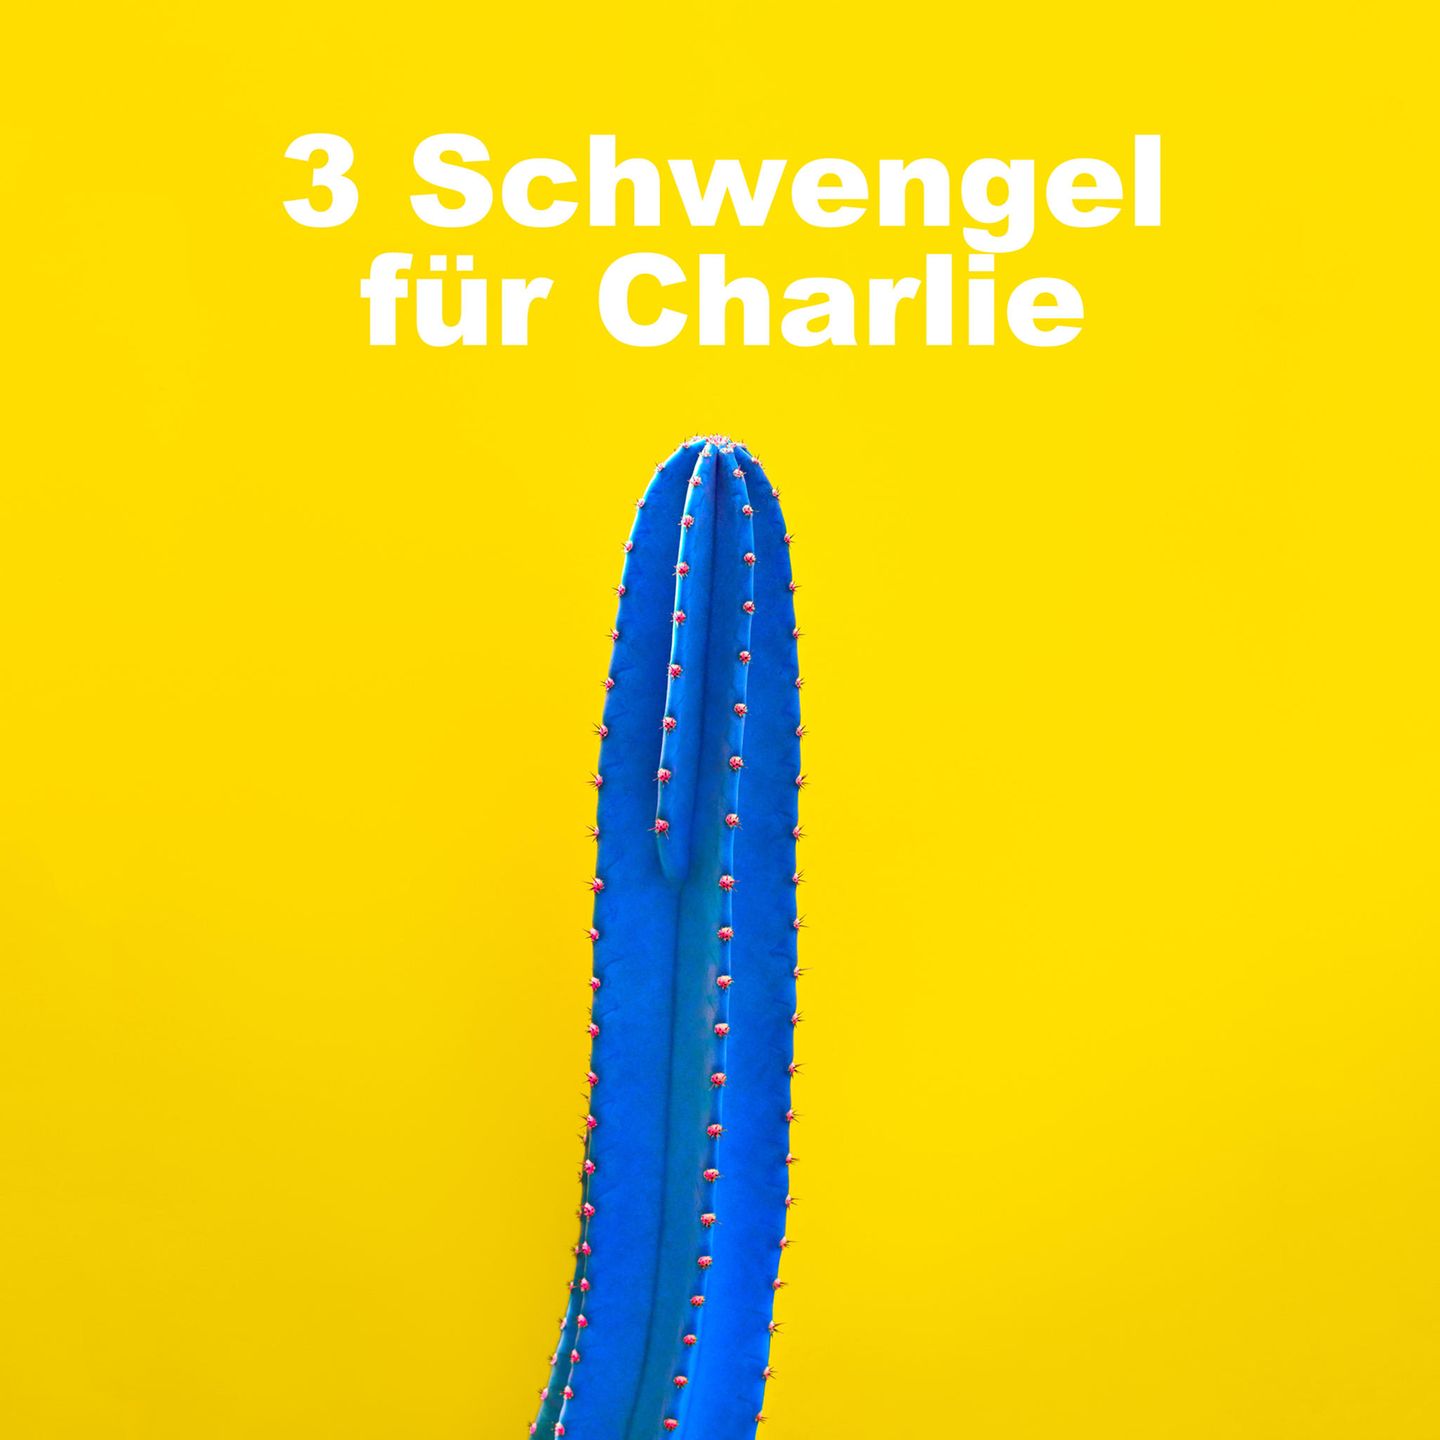 Lustige Pornotitel: Kaktus mit Pornotitel "3 Schwengel für Charlie"